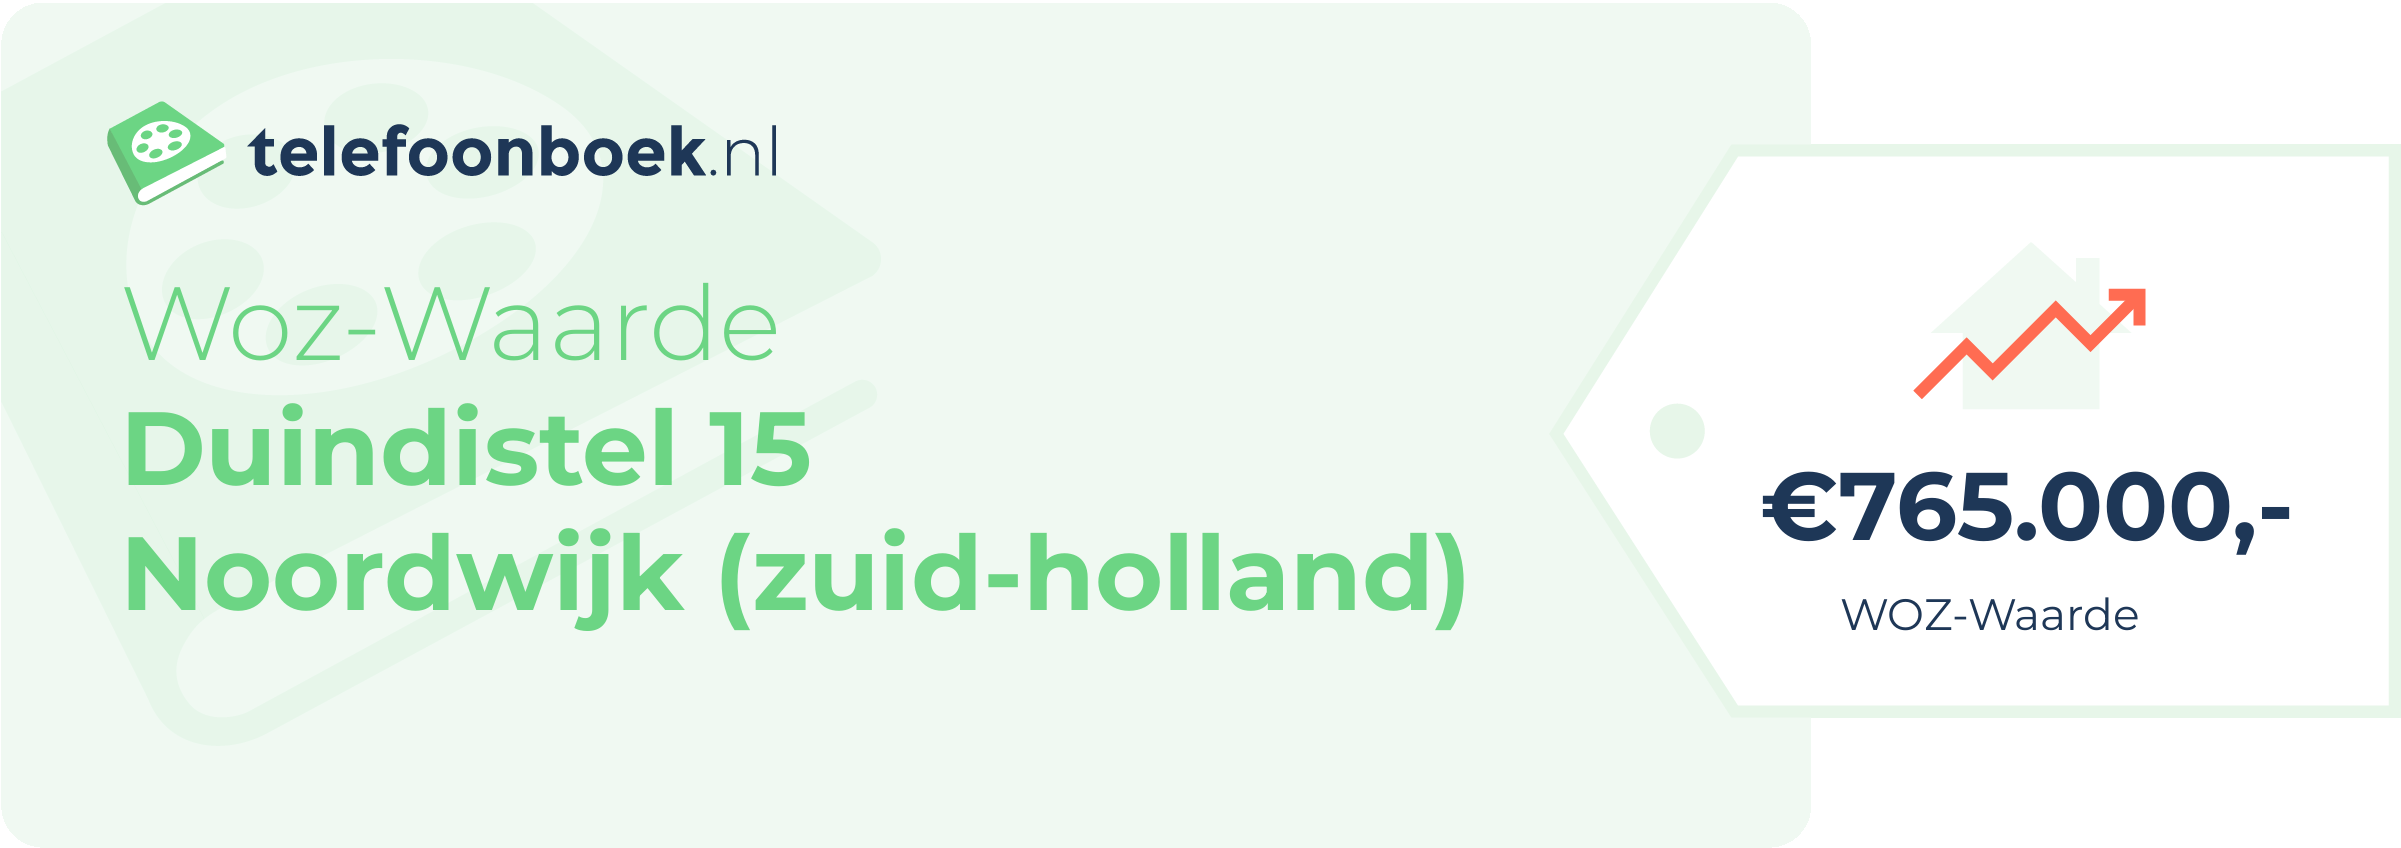 WOZ-waarde Duindistel 15 Noordwijk (Zuid-Holland)